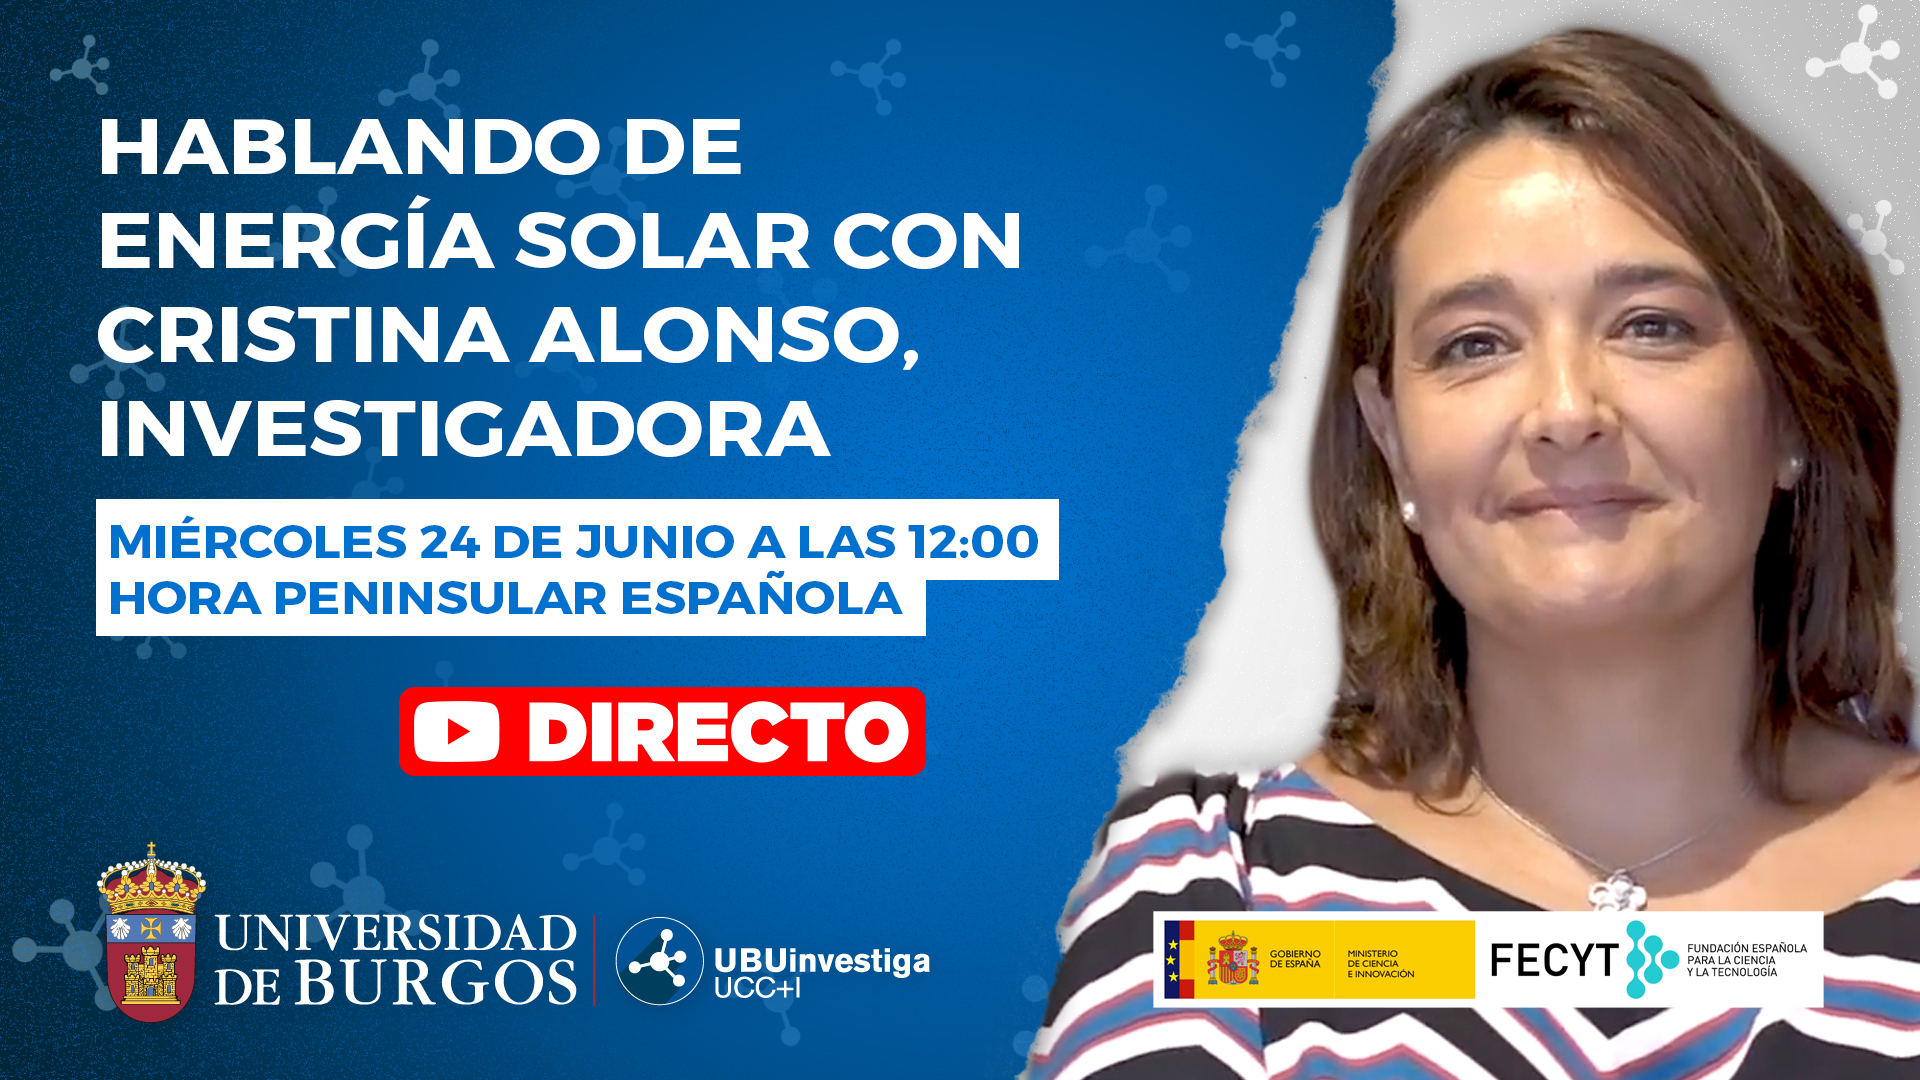  Hablando de energía solar con Cristina Alonso